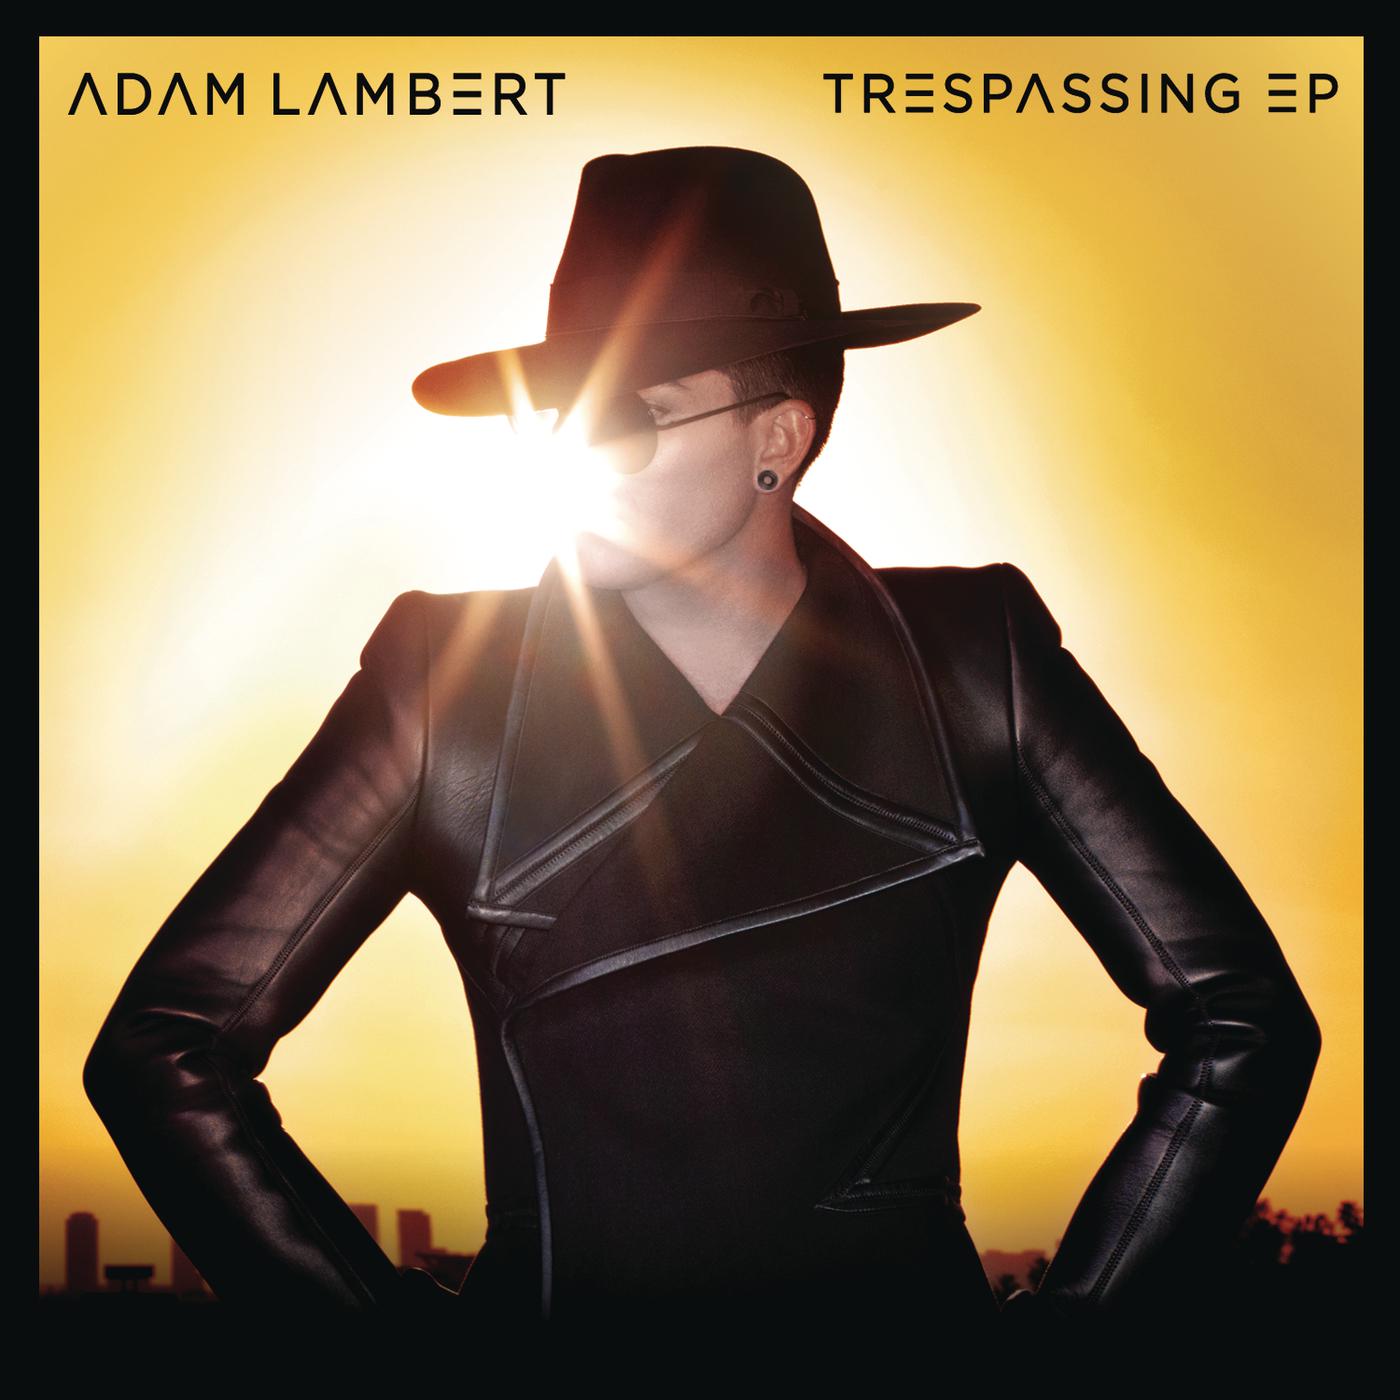 Adam Lambert - Better Than I Know Myself (Robert Marvin & Shearer Remix)